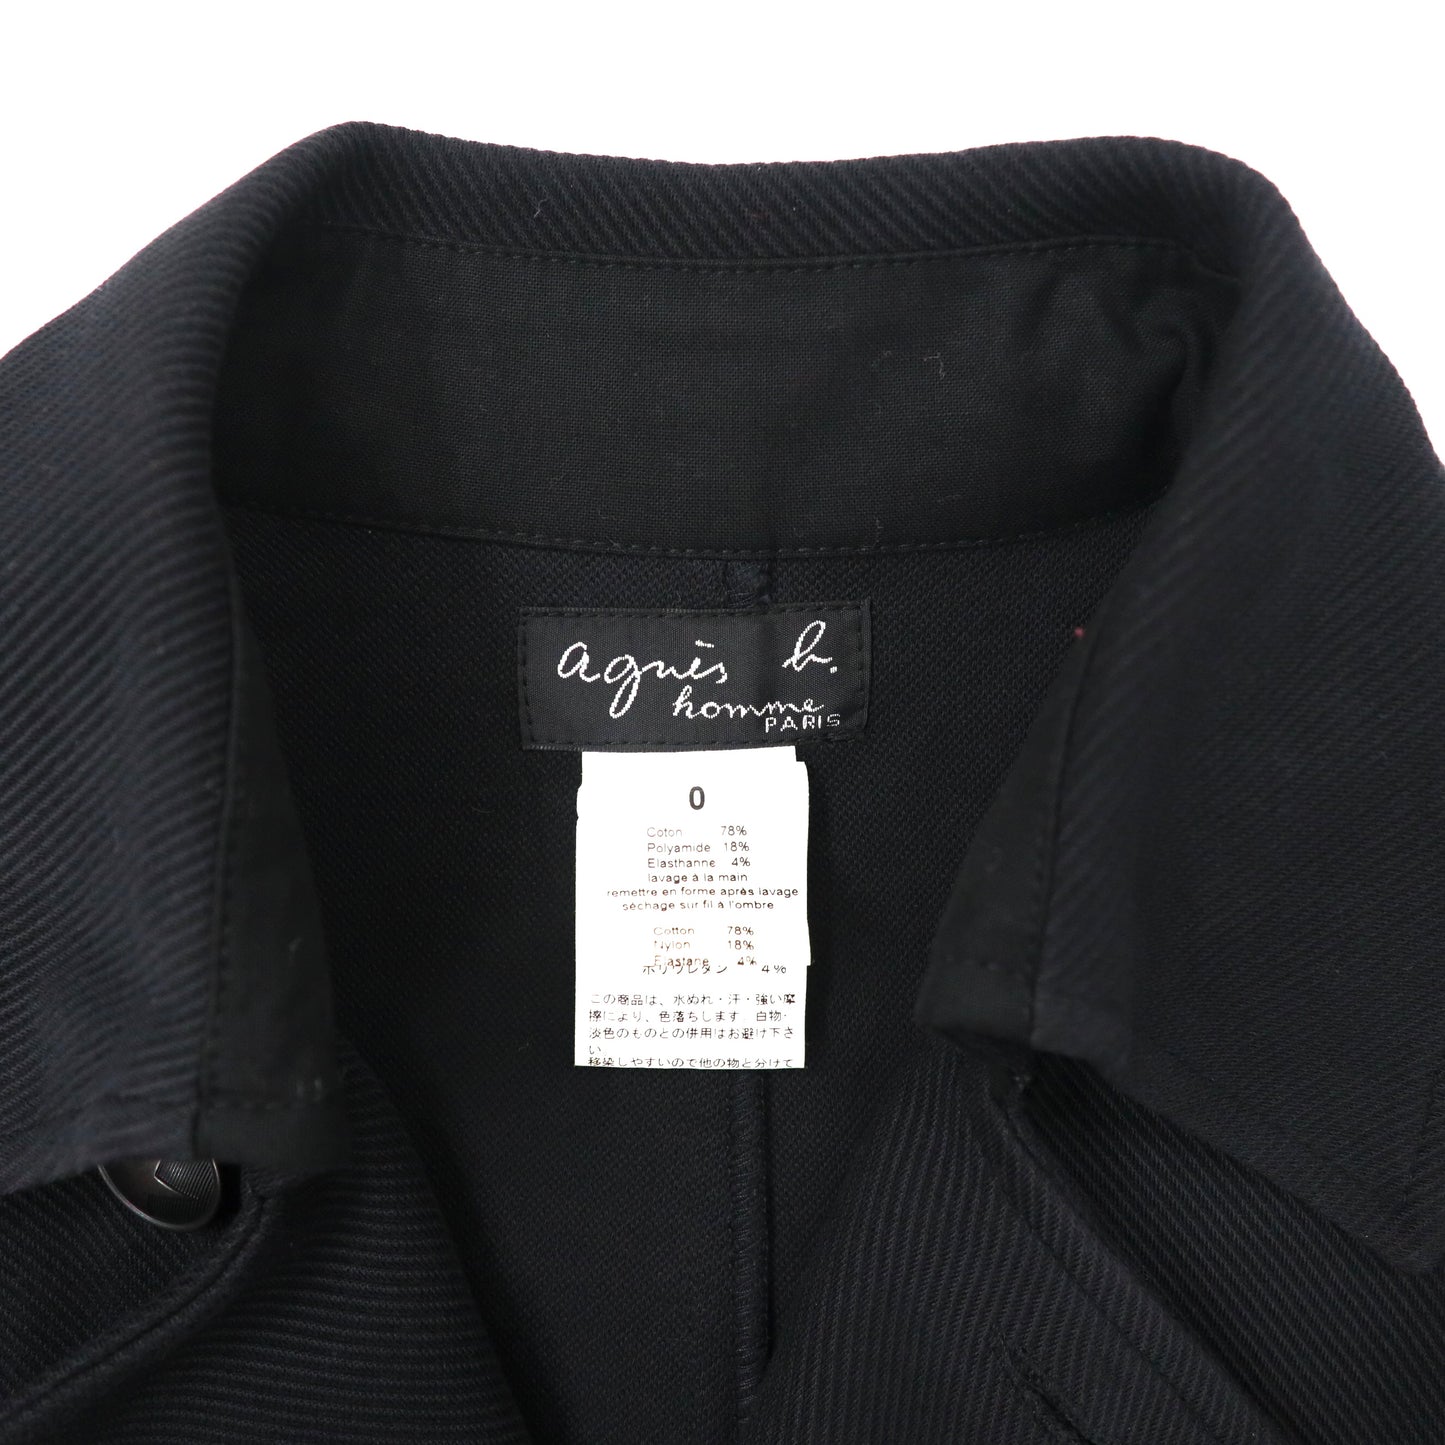 agnes b. homme ダブルブレストジャケット 0 ブラック コットン ポーランド製